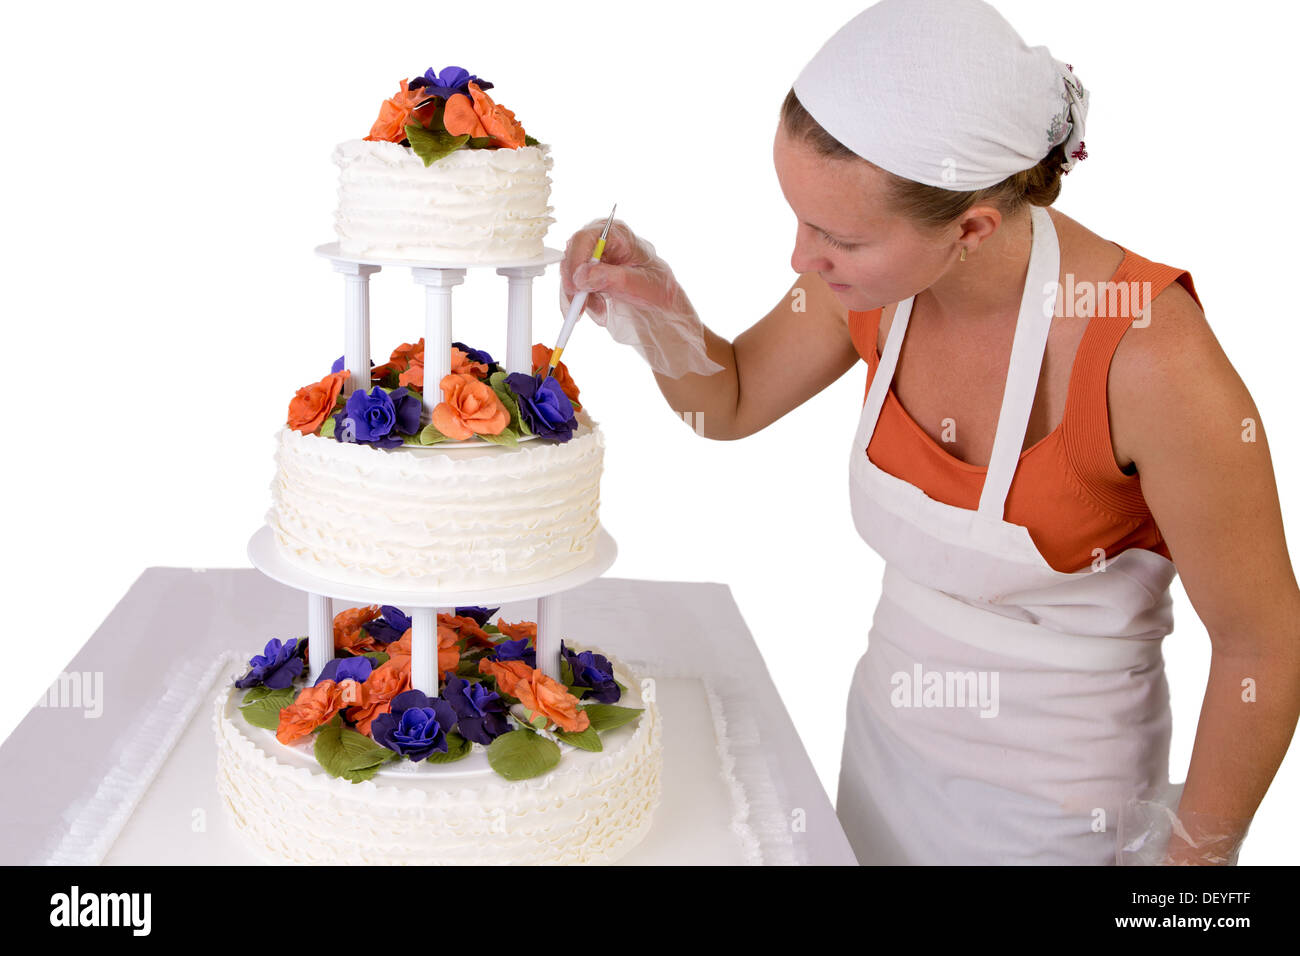 Baker-Dame mit einem weißen Halstuch zu einer endgültigen Hochzeitstorte berührt, Kuchen Fondant Rüschen auf der Seite hat und dekoriert Stockfoto